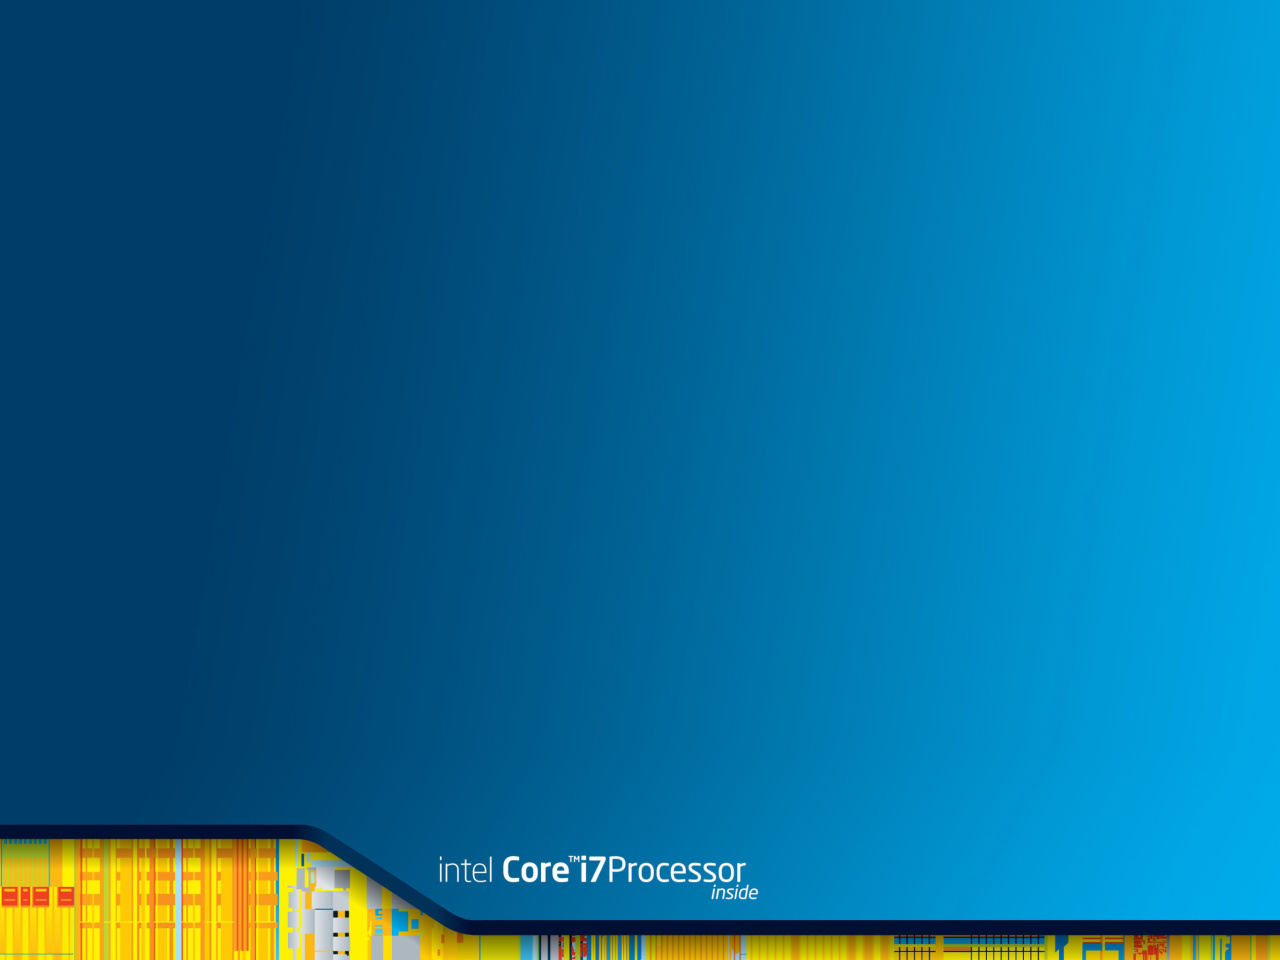 Intel Core i7 Processor wallpaper 1280x960